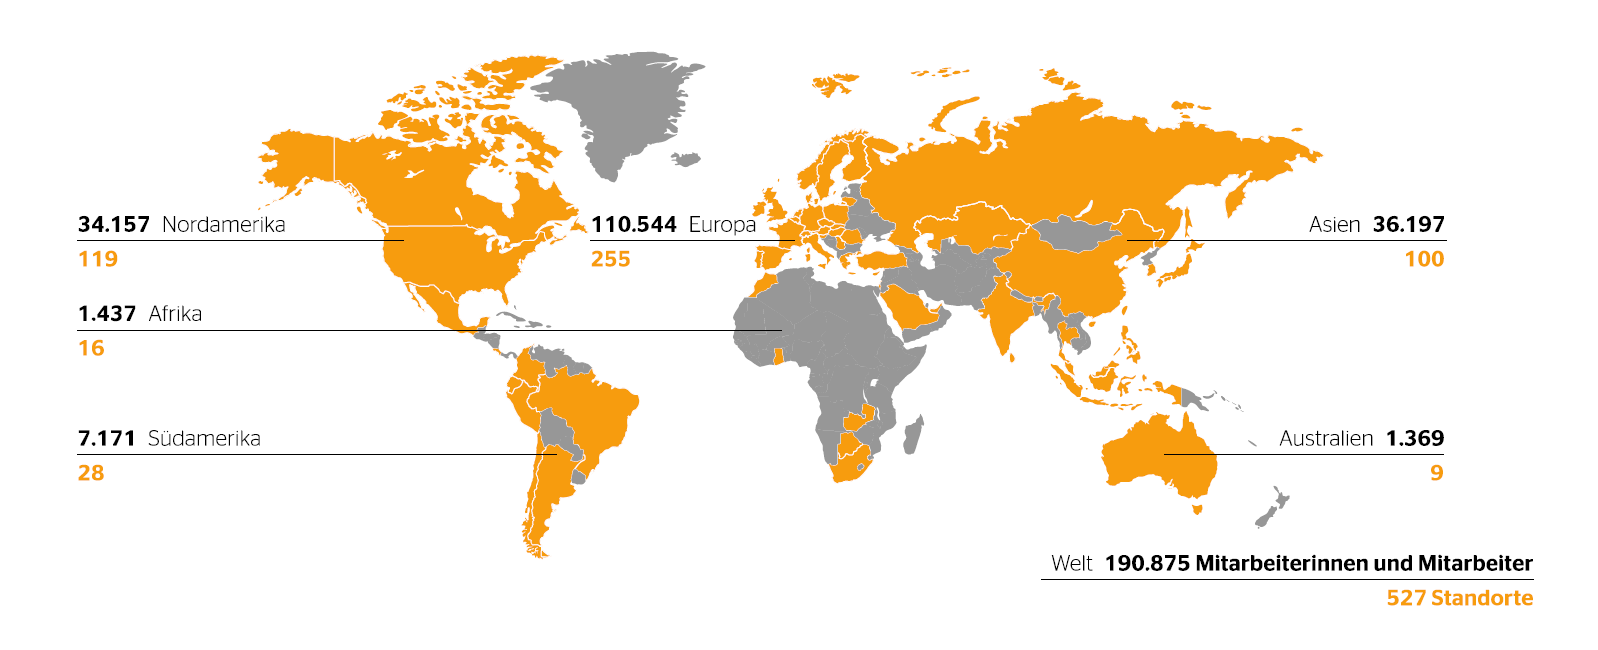 527 Standorte in 58 Ländern und Märkten